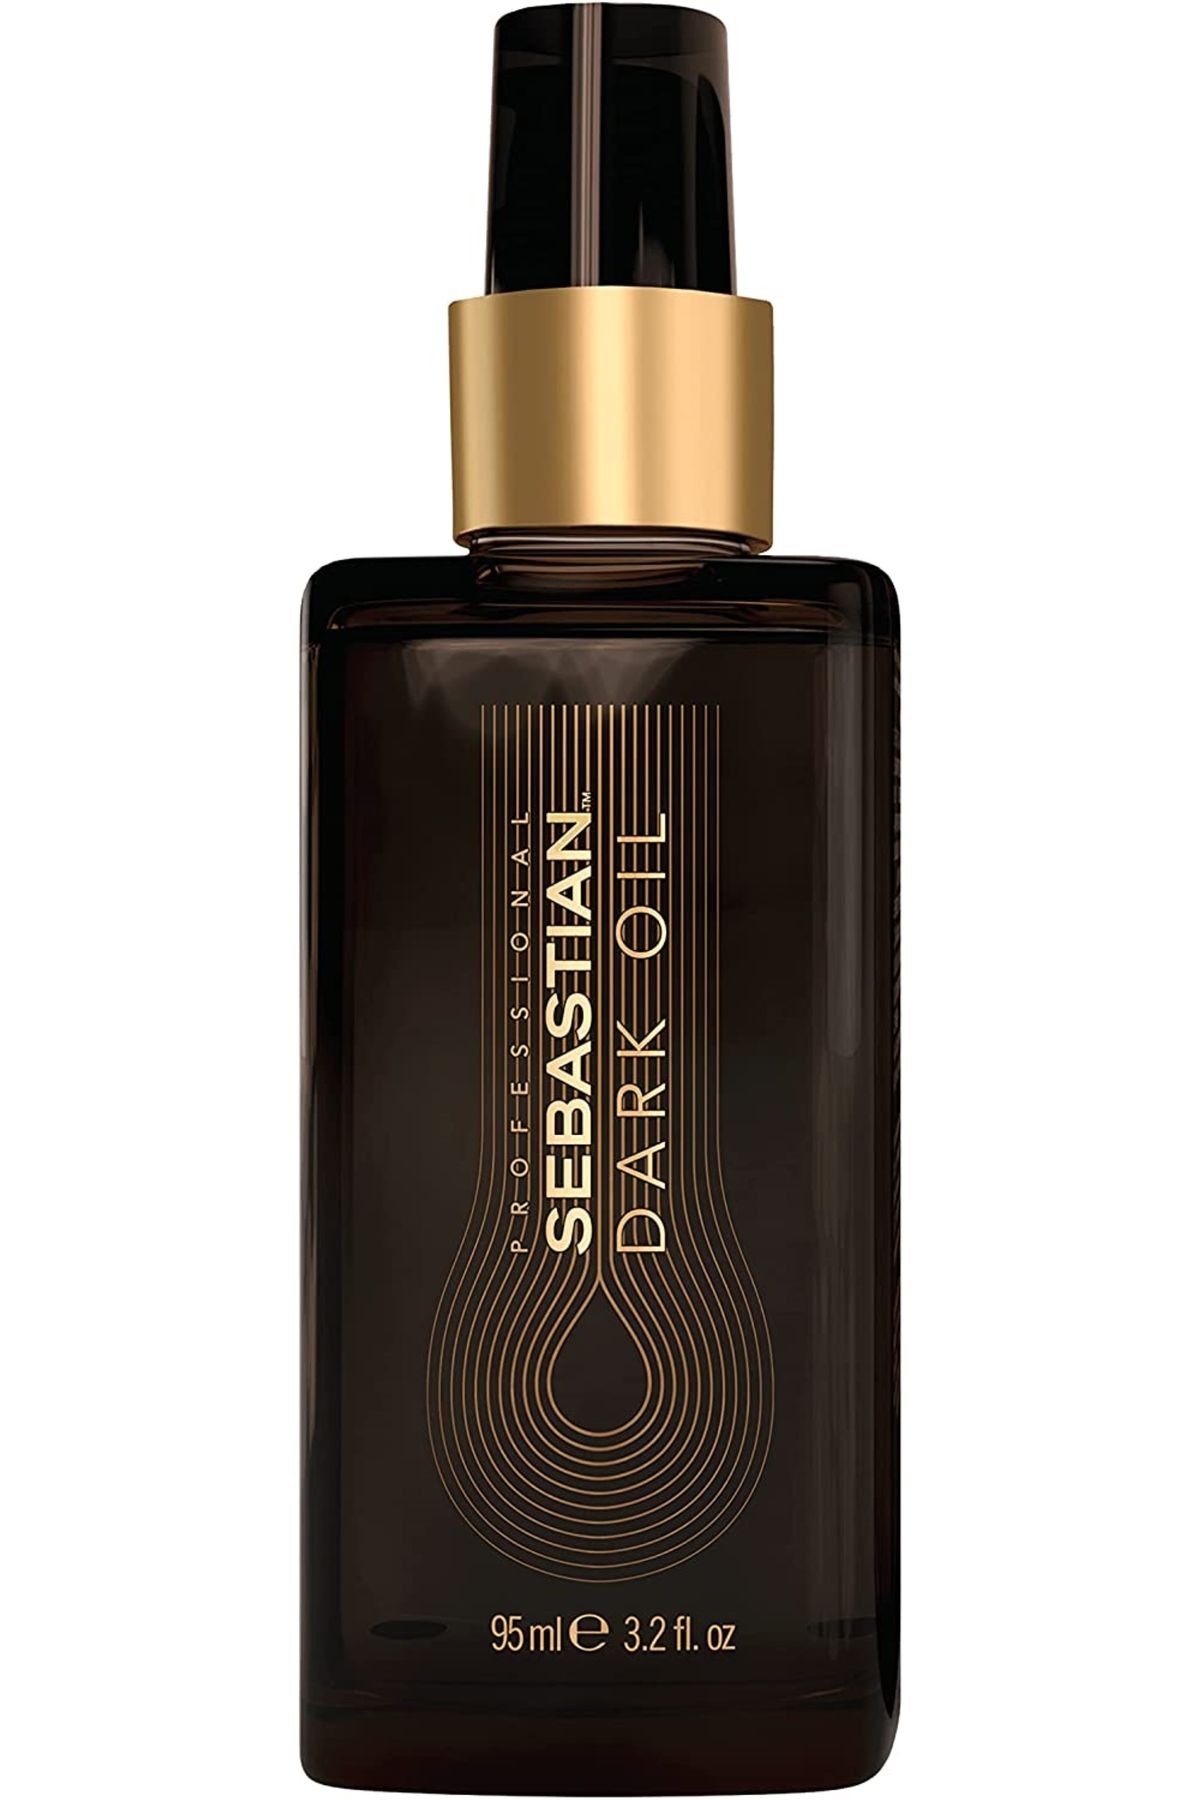 Sebastian Dark Oil Argan Yağlı Besleyici Saç Bakım Yağı 95ml. NOONLINE8900